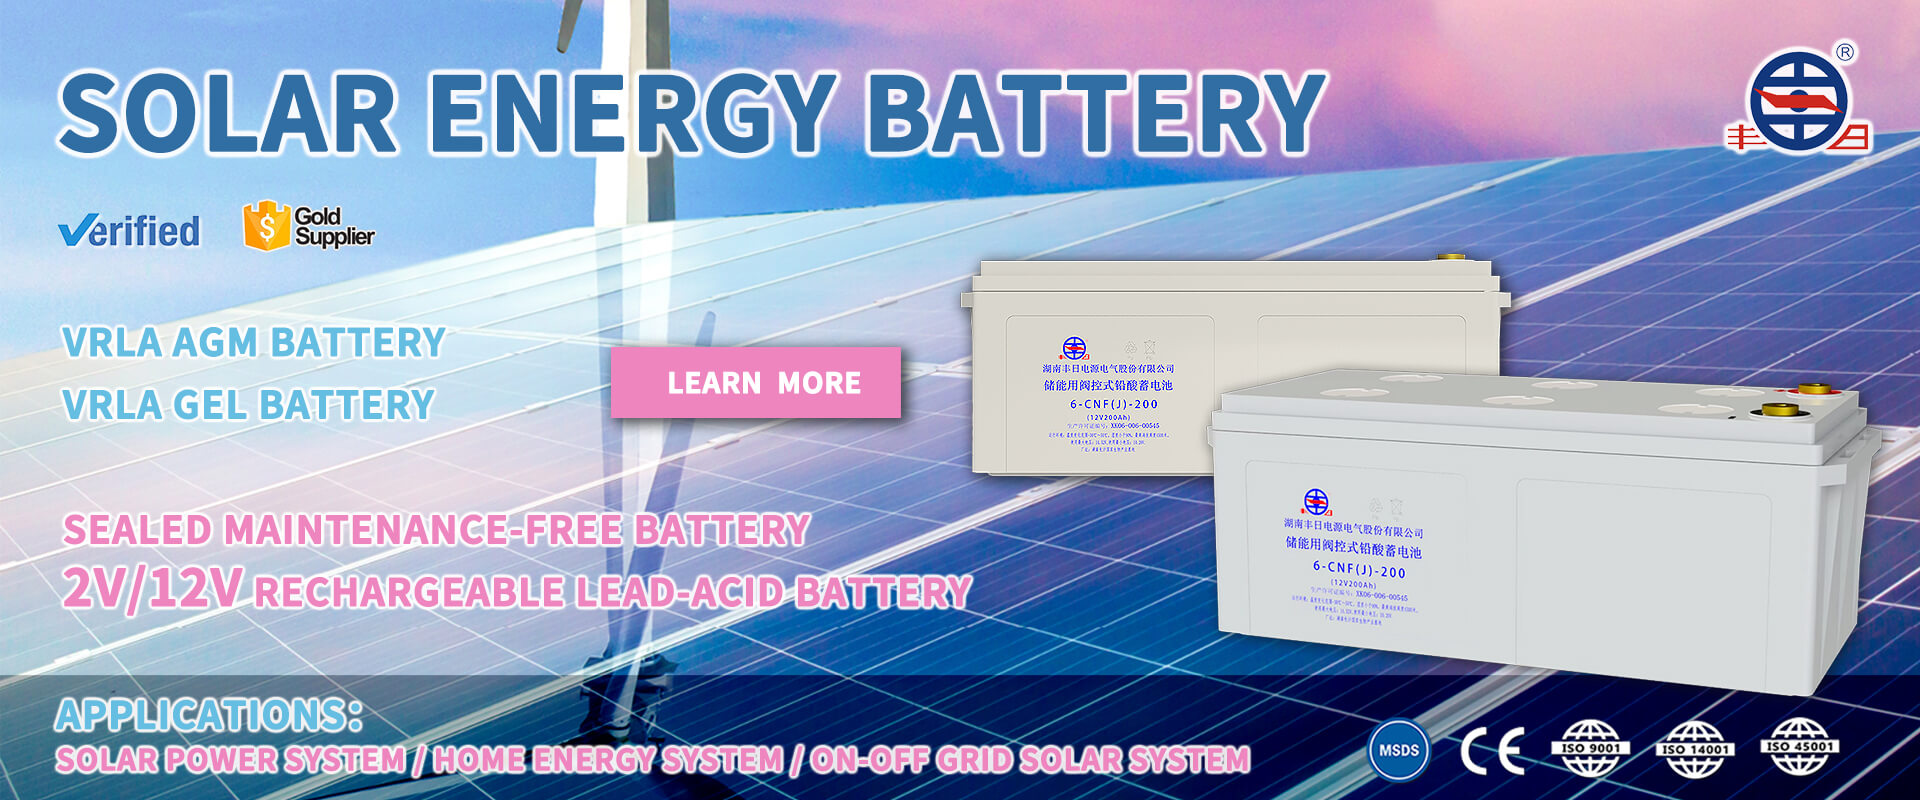 Banner für Blei-Säure-Energiespeicherbatterien